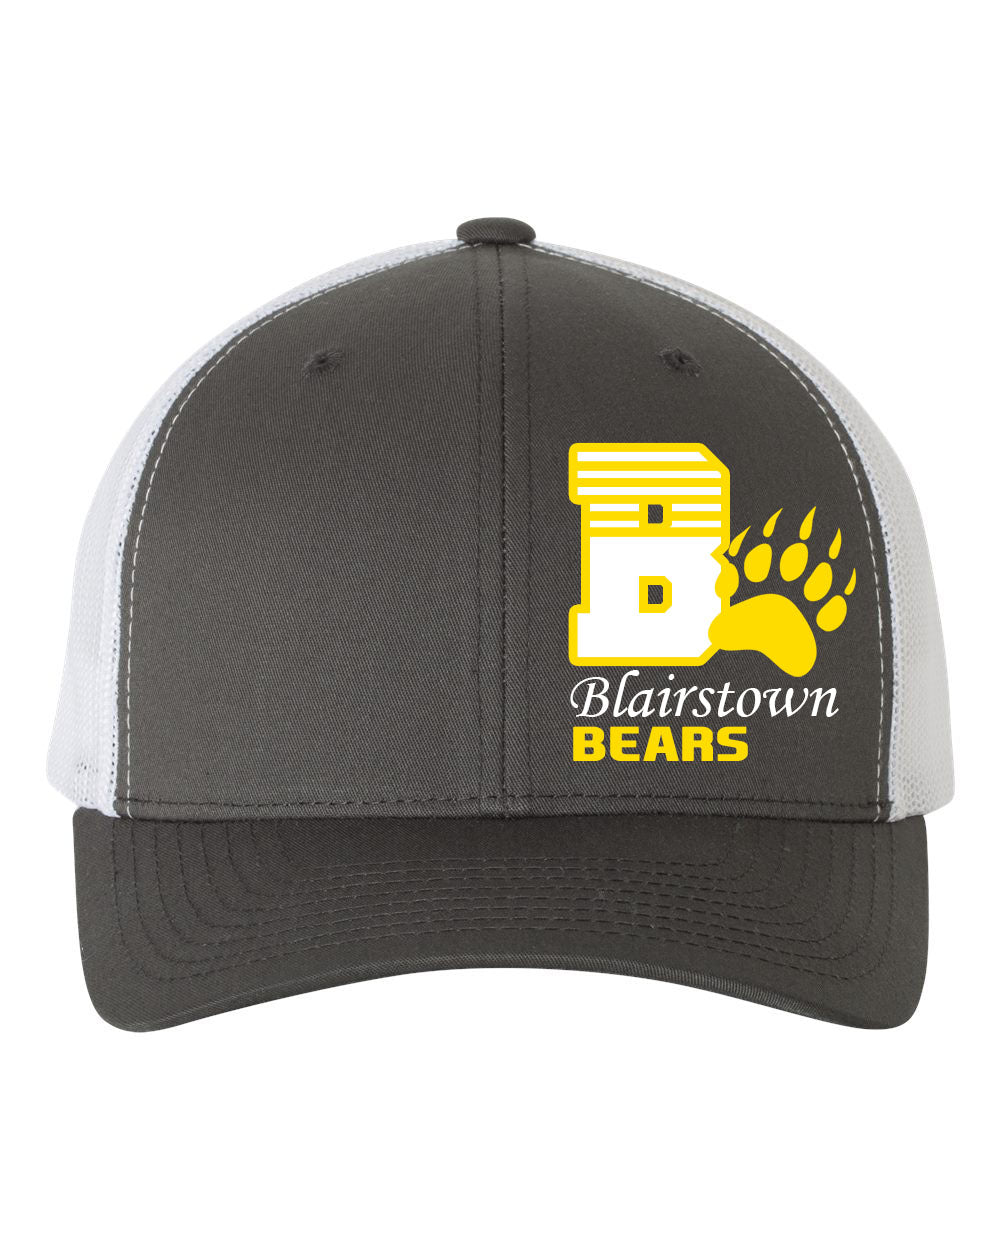 Blairstown Bears Design 8 Trucker Hat